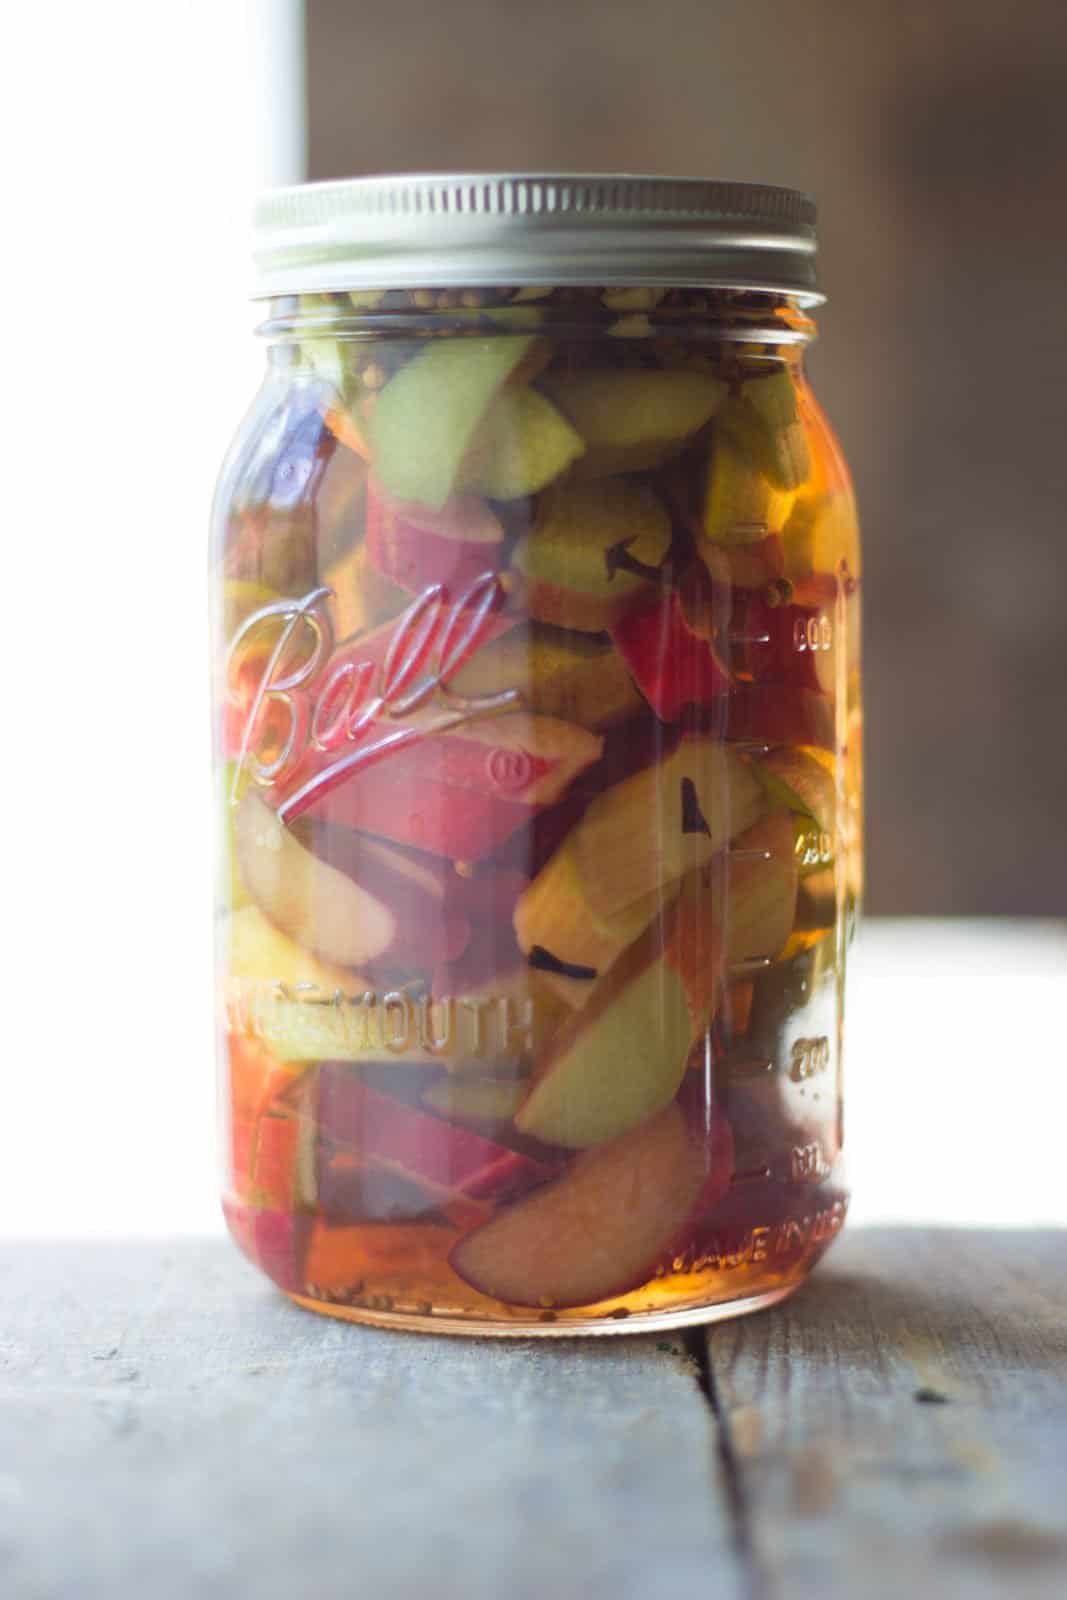 Sweet pickled rhubarb in a clear jar